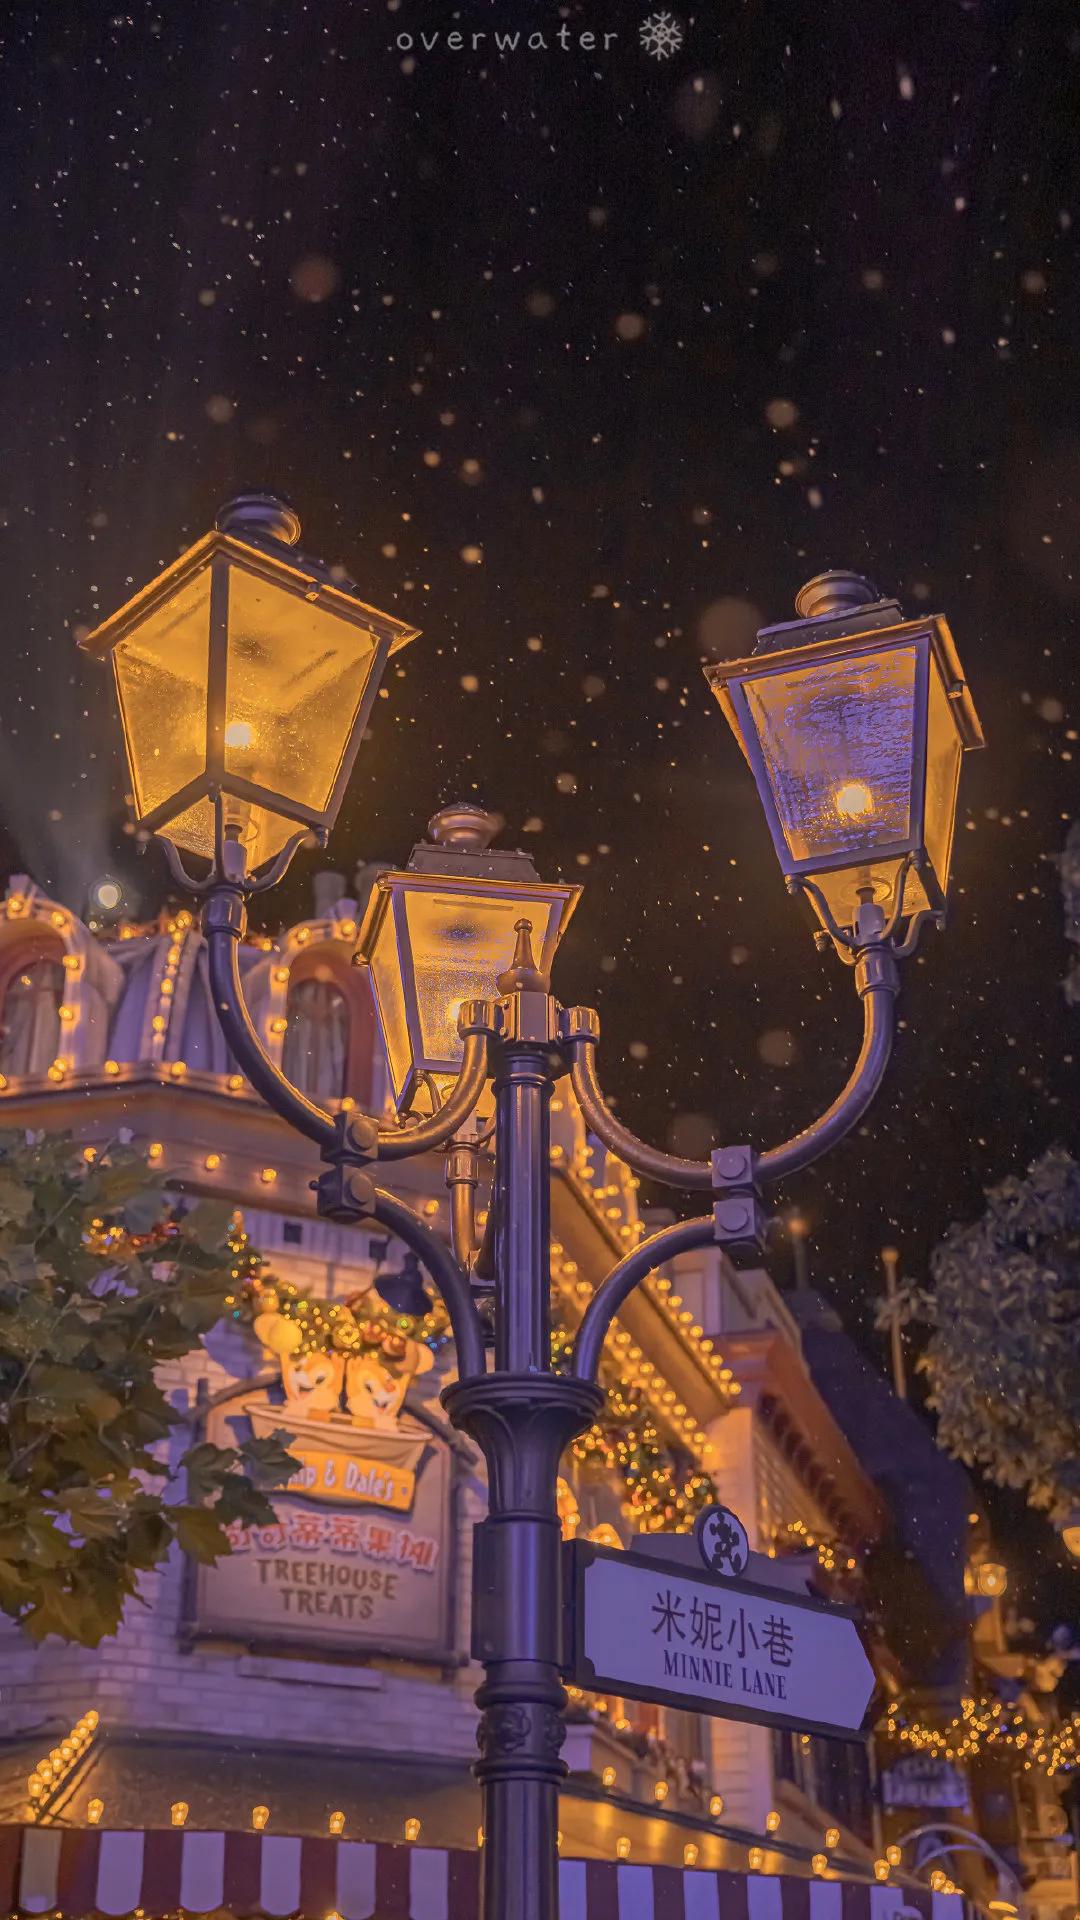 迪士尼 新年特别版花火来了噢 壁纸 背景 头像 动漫 蛋蛋赞